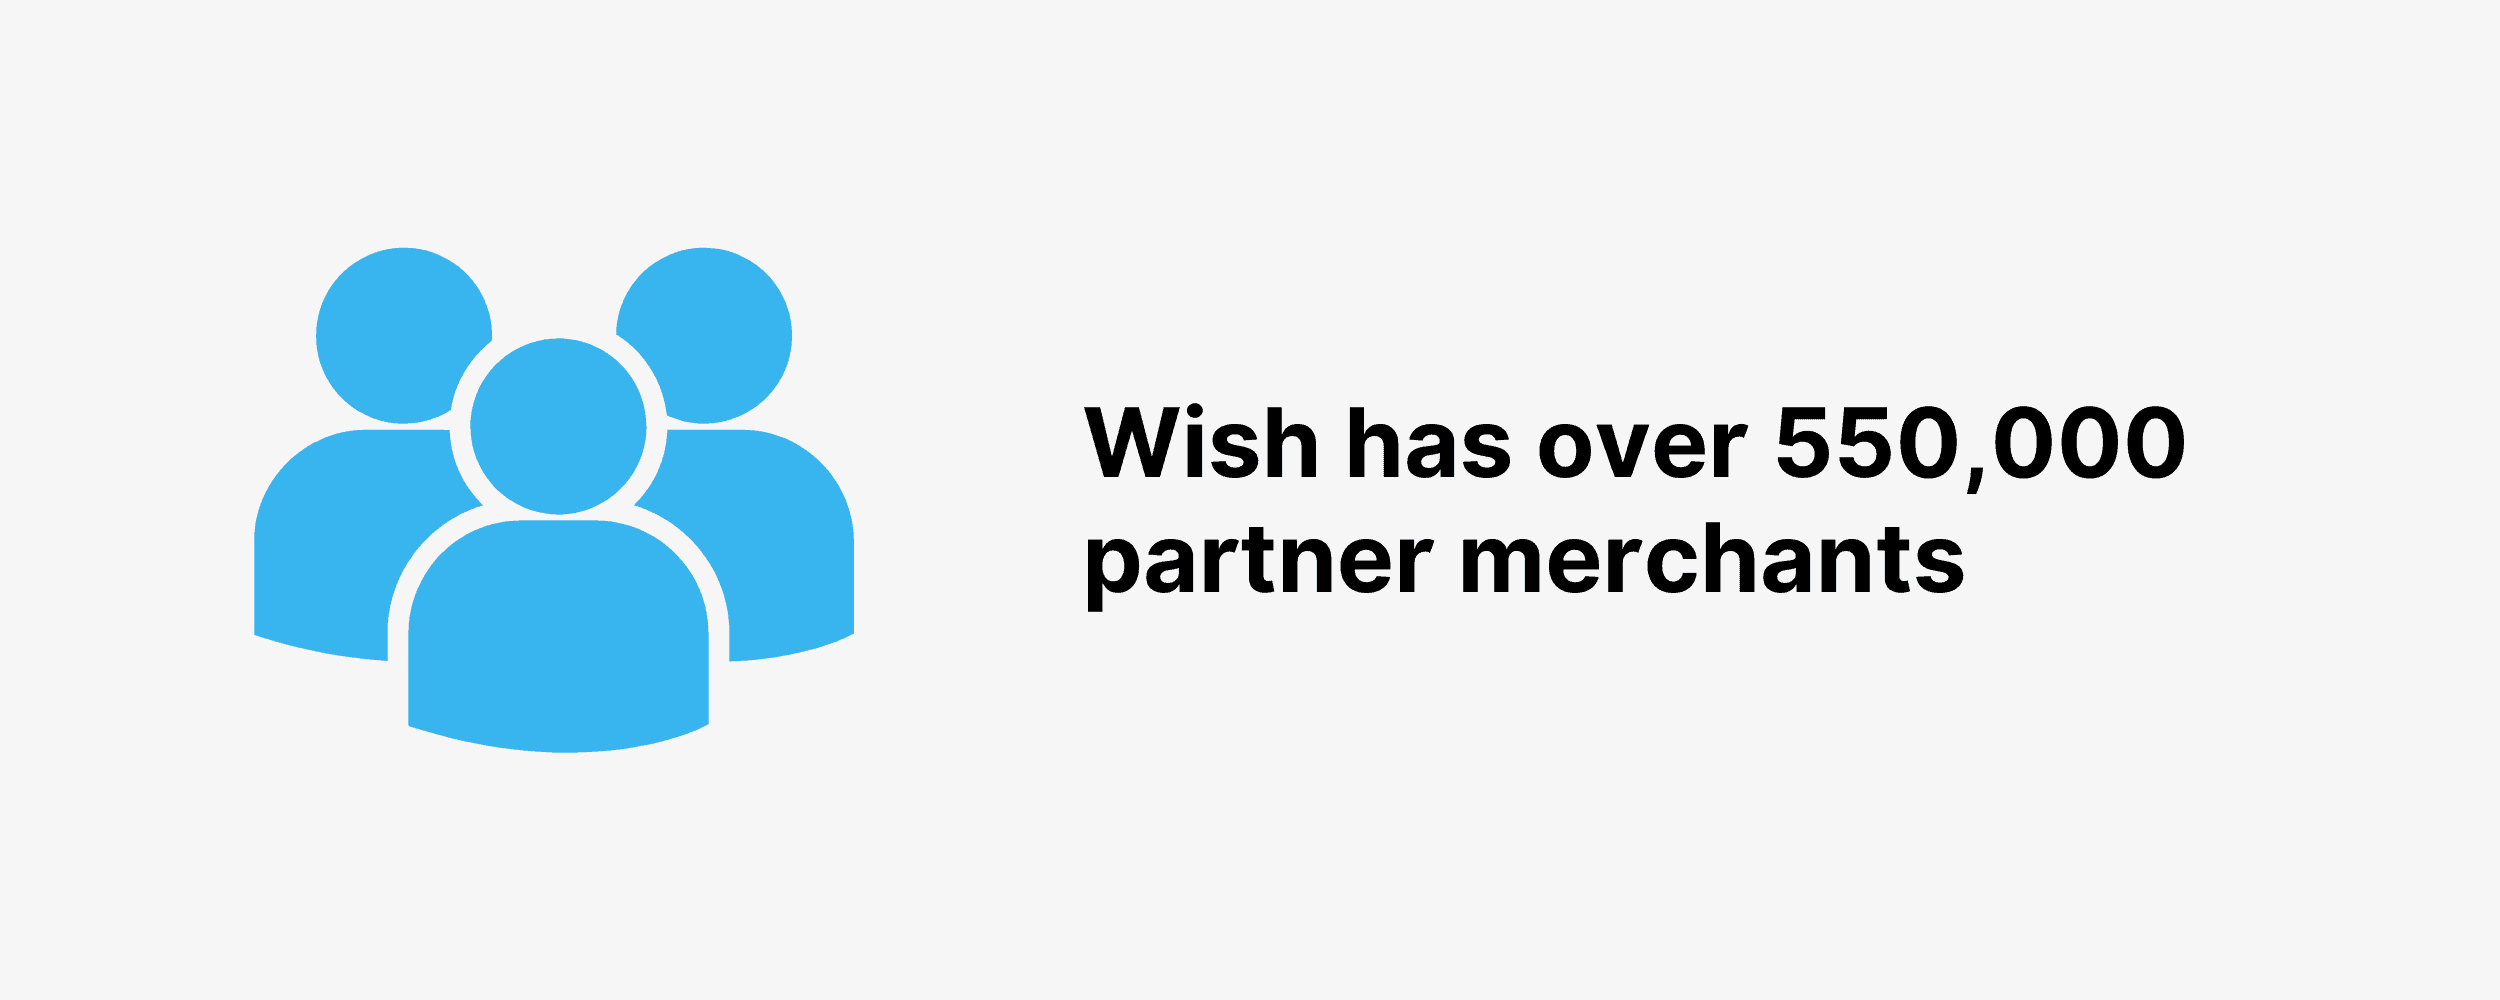 Wish has over 550,000 partner merchants